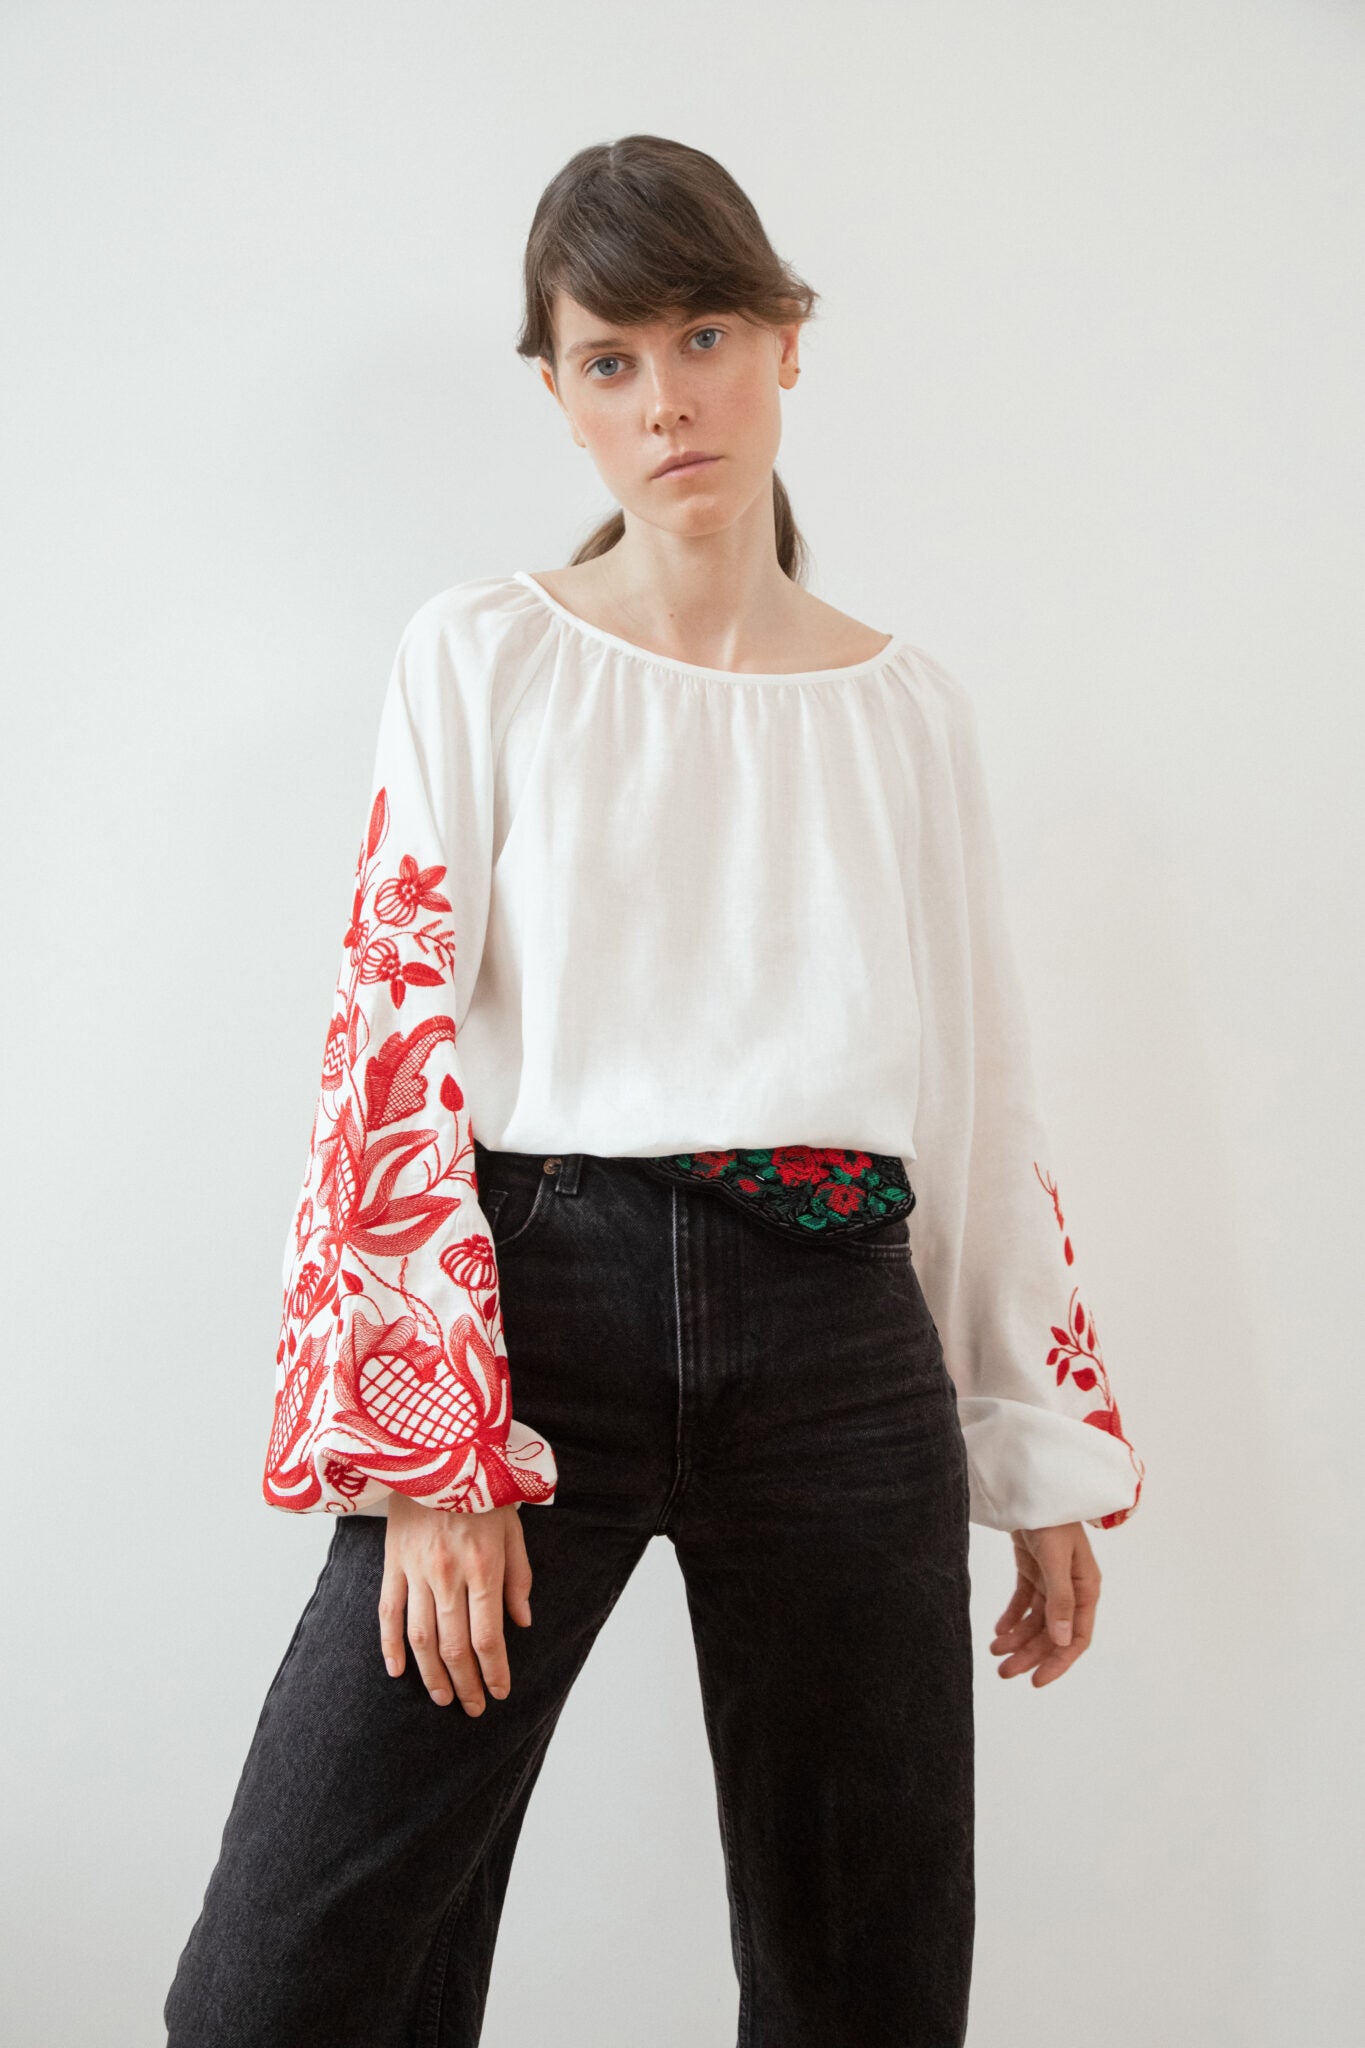 Блузка за мотивами традиційної сорочки з дизайнерською вишивкою  Гранатова лоза (червоний орнамент)